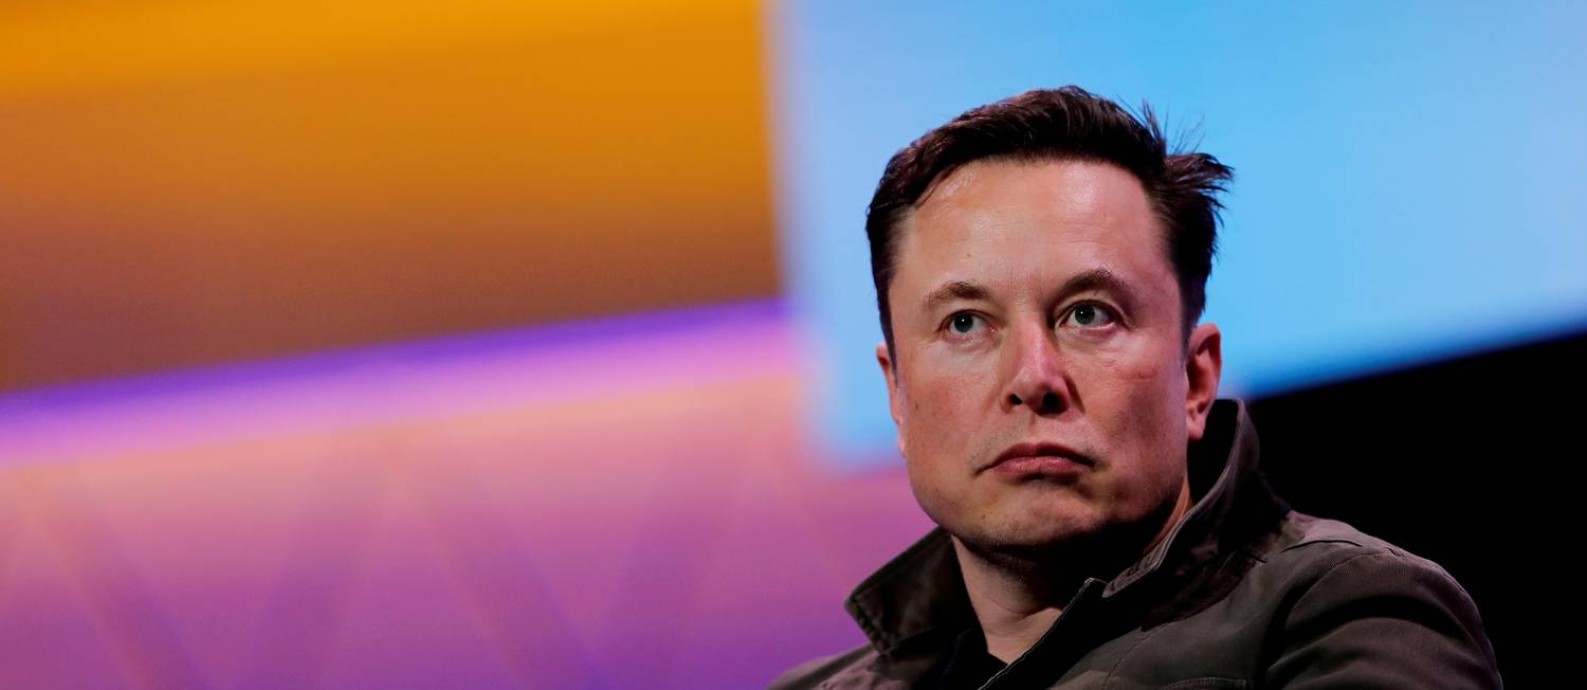 Em uma semana, Musk vendeu US$ 5,7 bilhões de ações da Tesla Foto: Mike Blake/REUTERS/13-06-2019